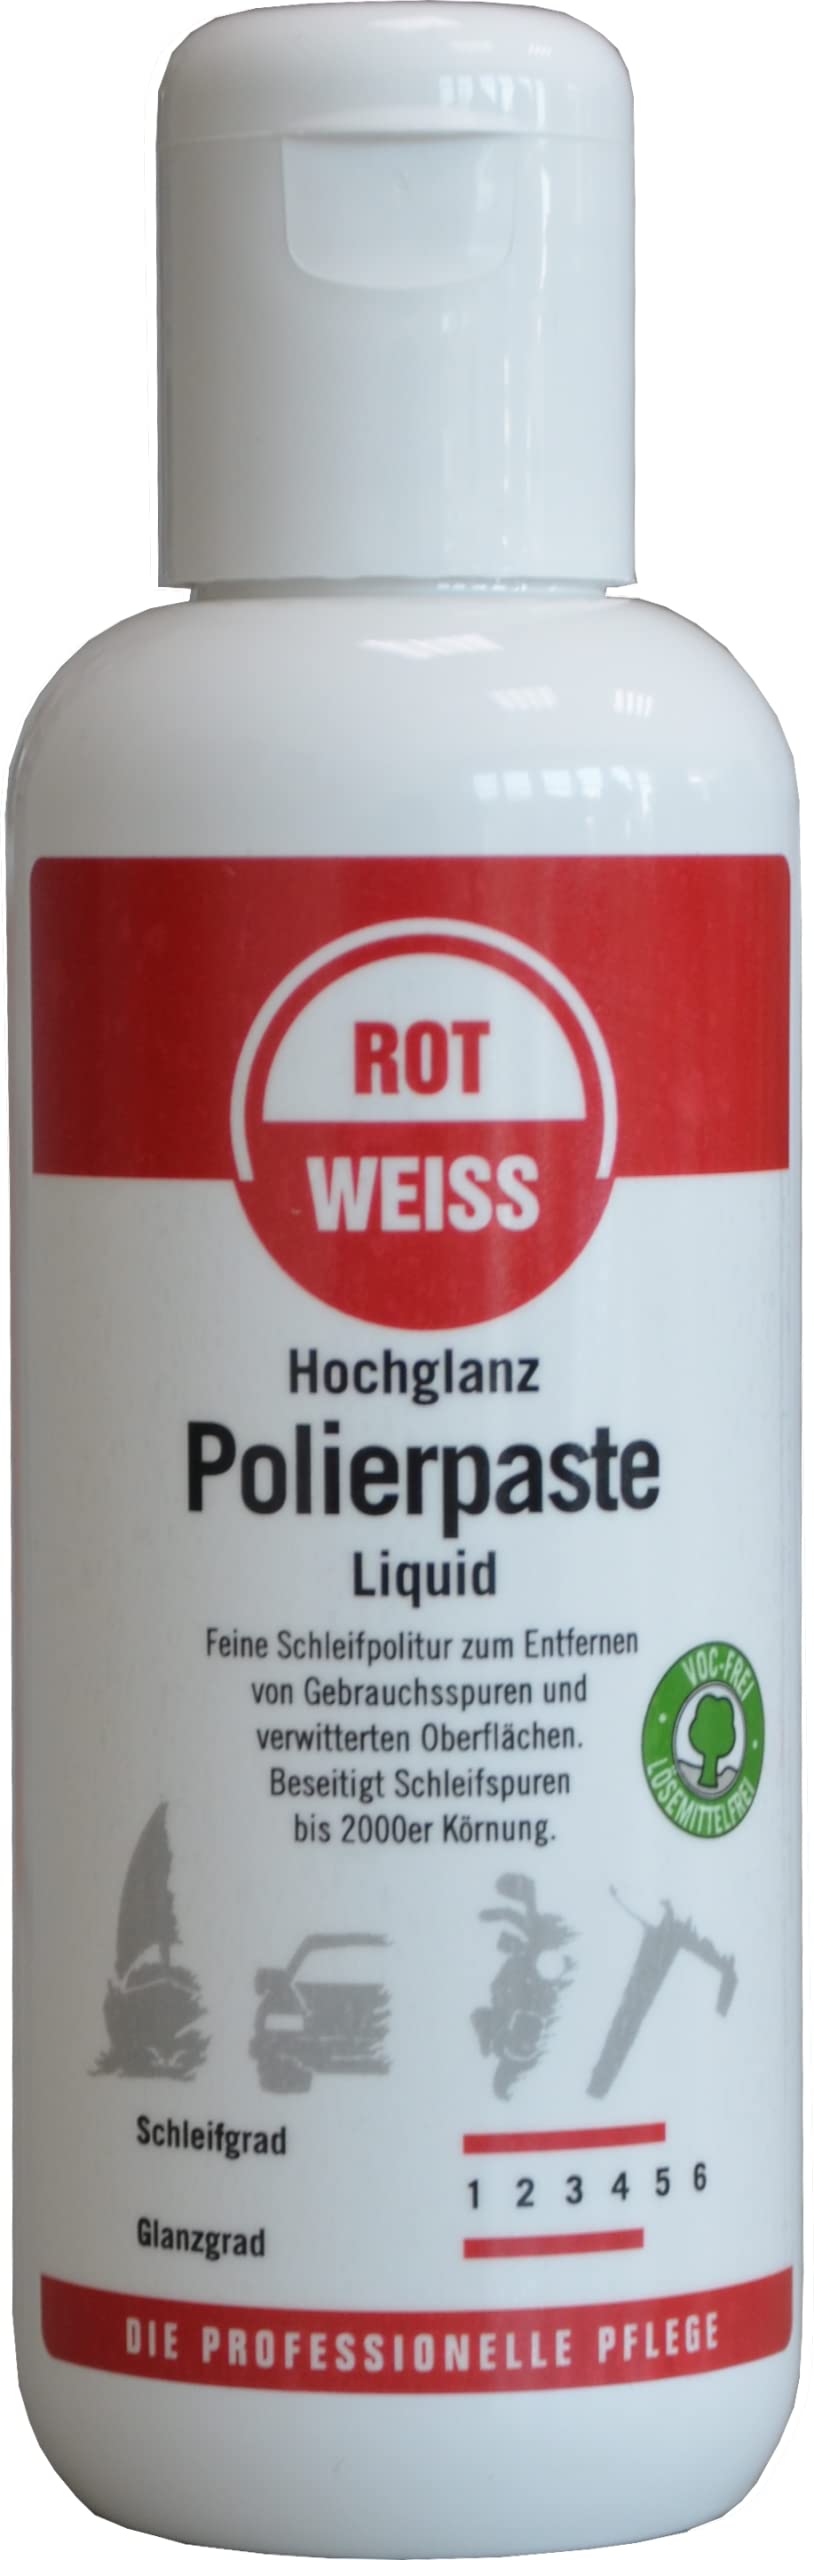 Rotweiss 1025 Hochglanz Polierpaste Liquid 250 ml von ROT WEISS